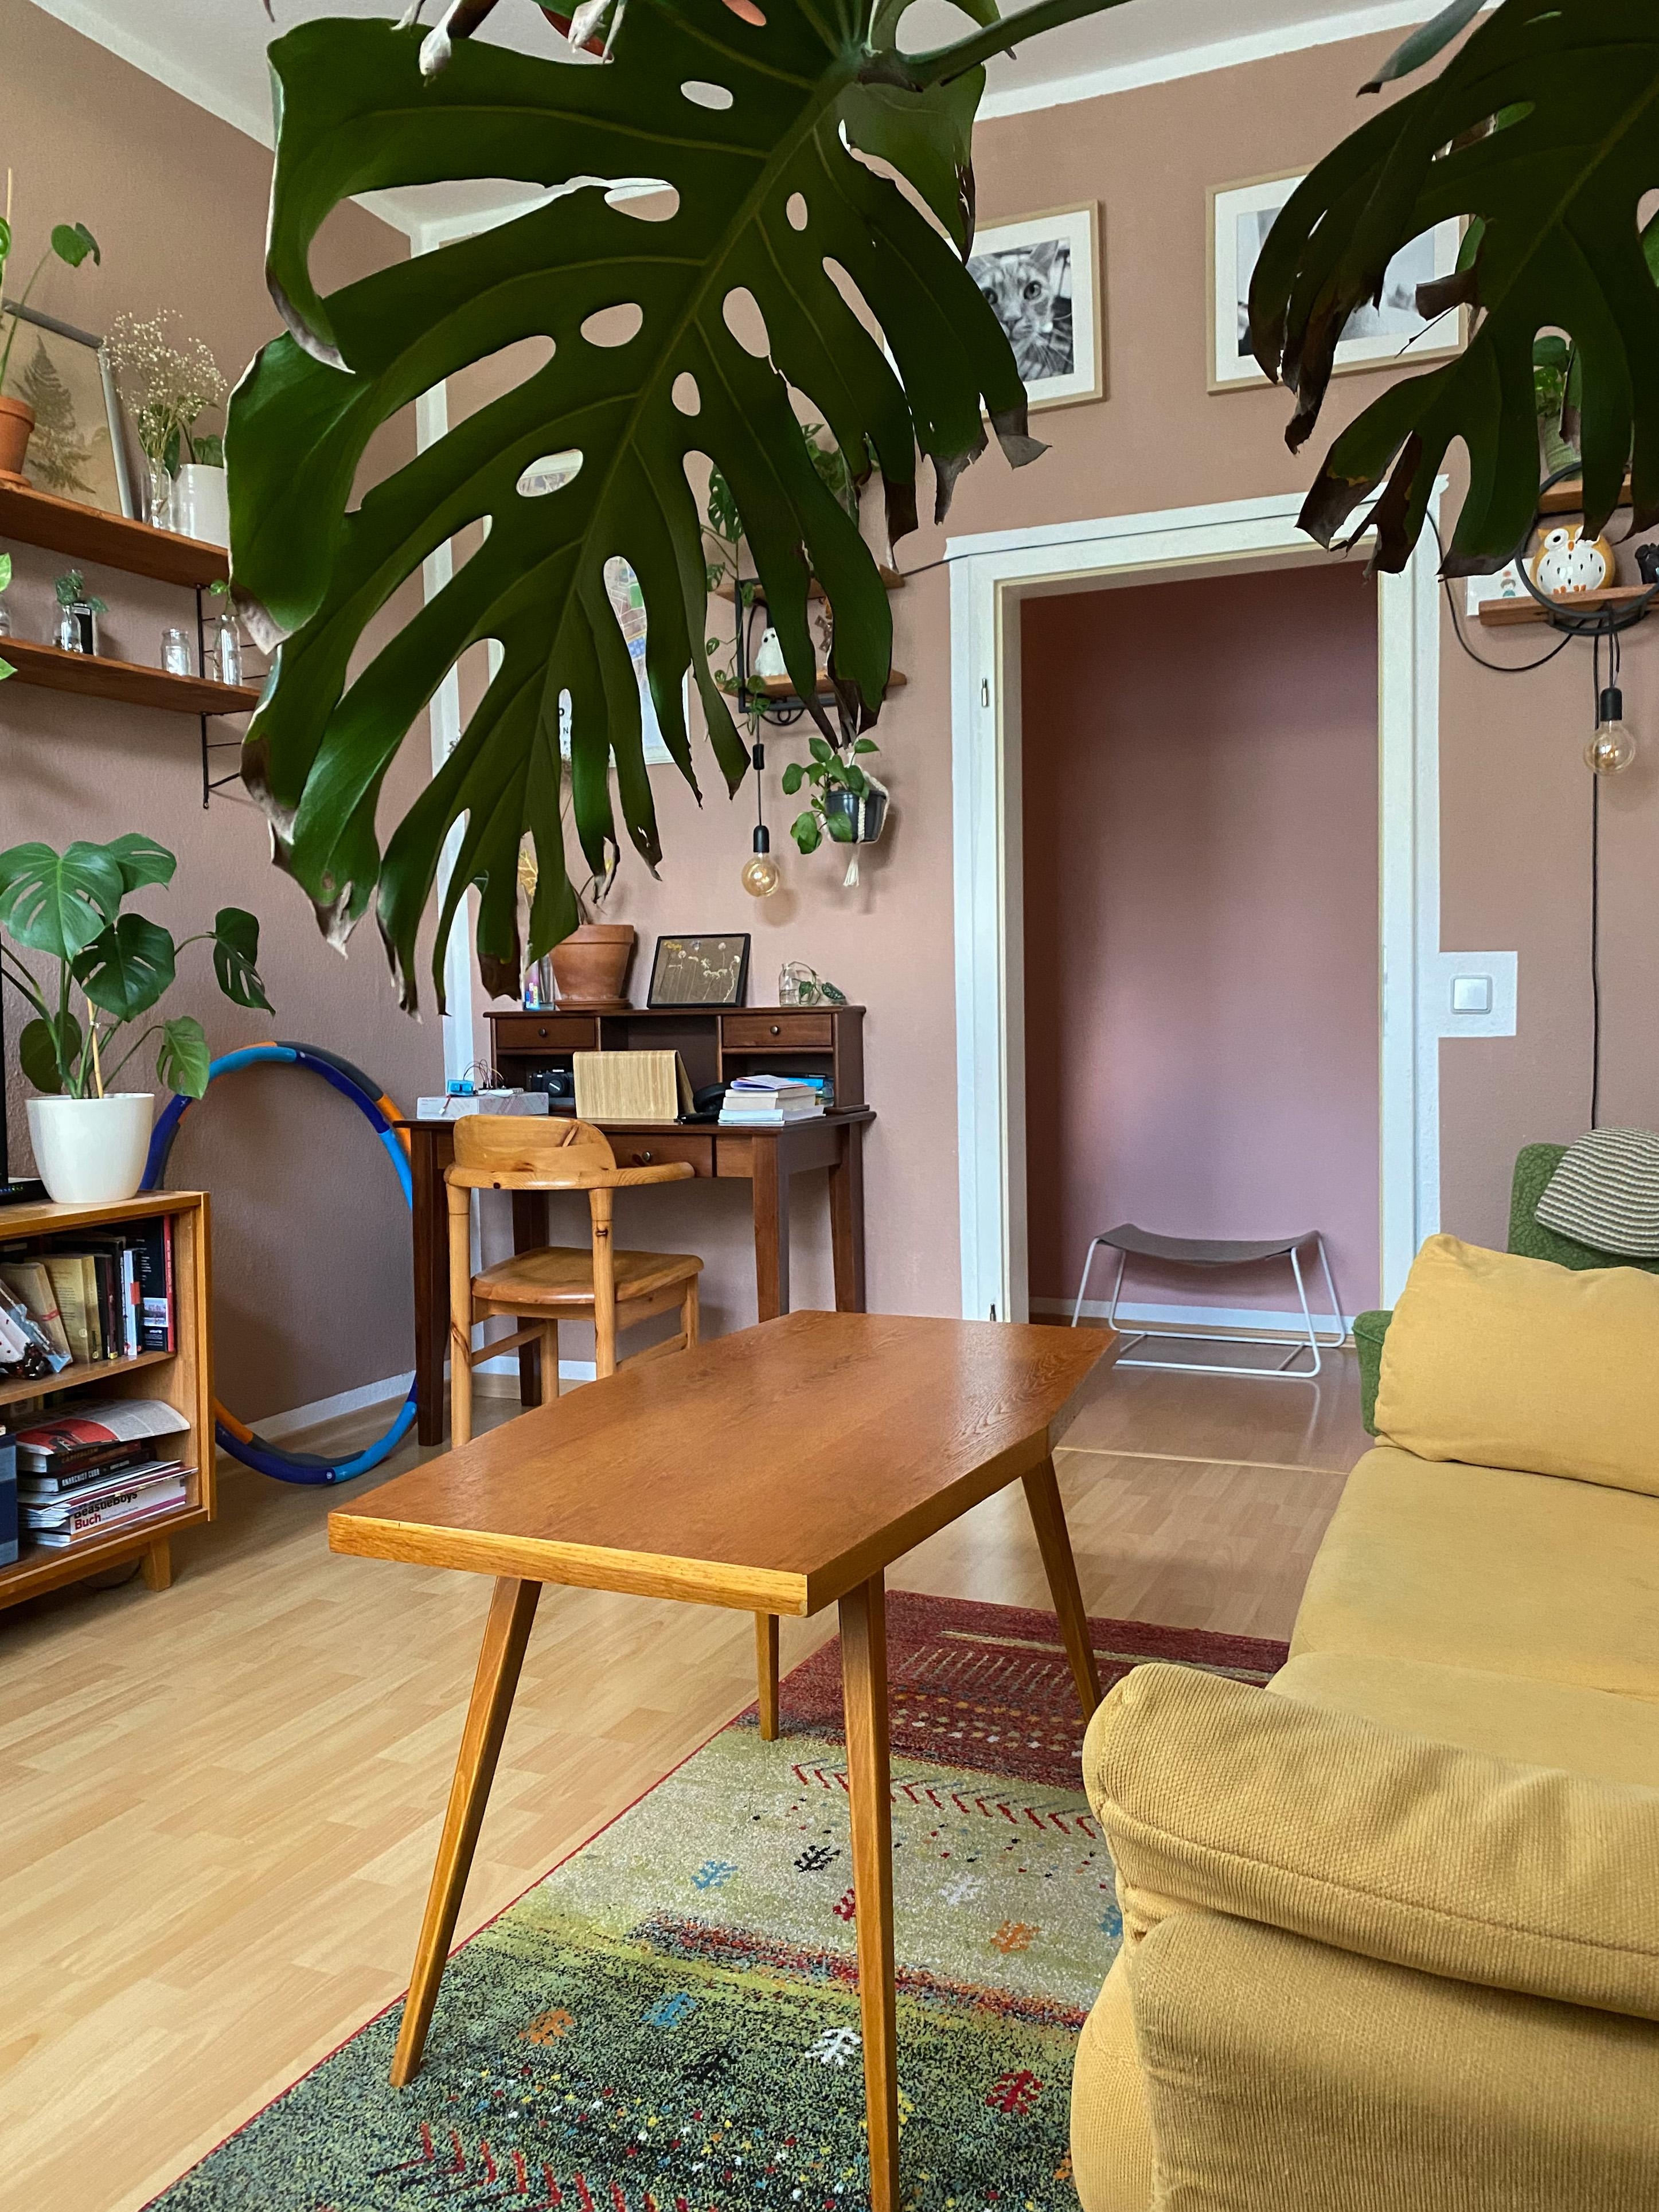 Pflanzenblick im #wohnzimmer. 
#urbanjungle #monstera #interior #sofa #vintage